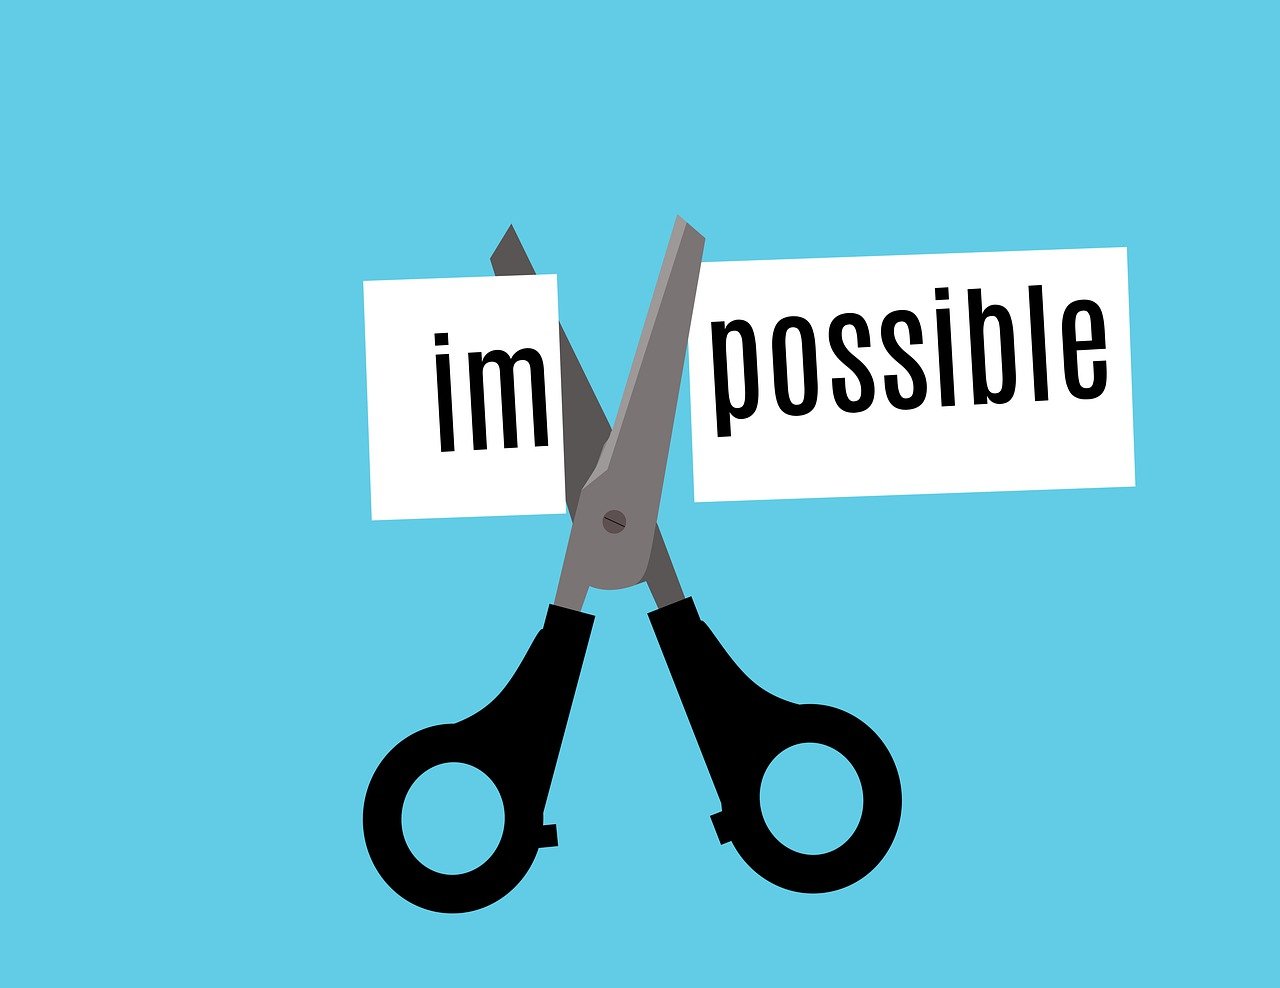 Une paire de ciseaux coupe le mot "impossible" en 2 : "im" et "possible"